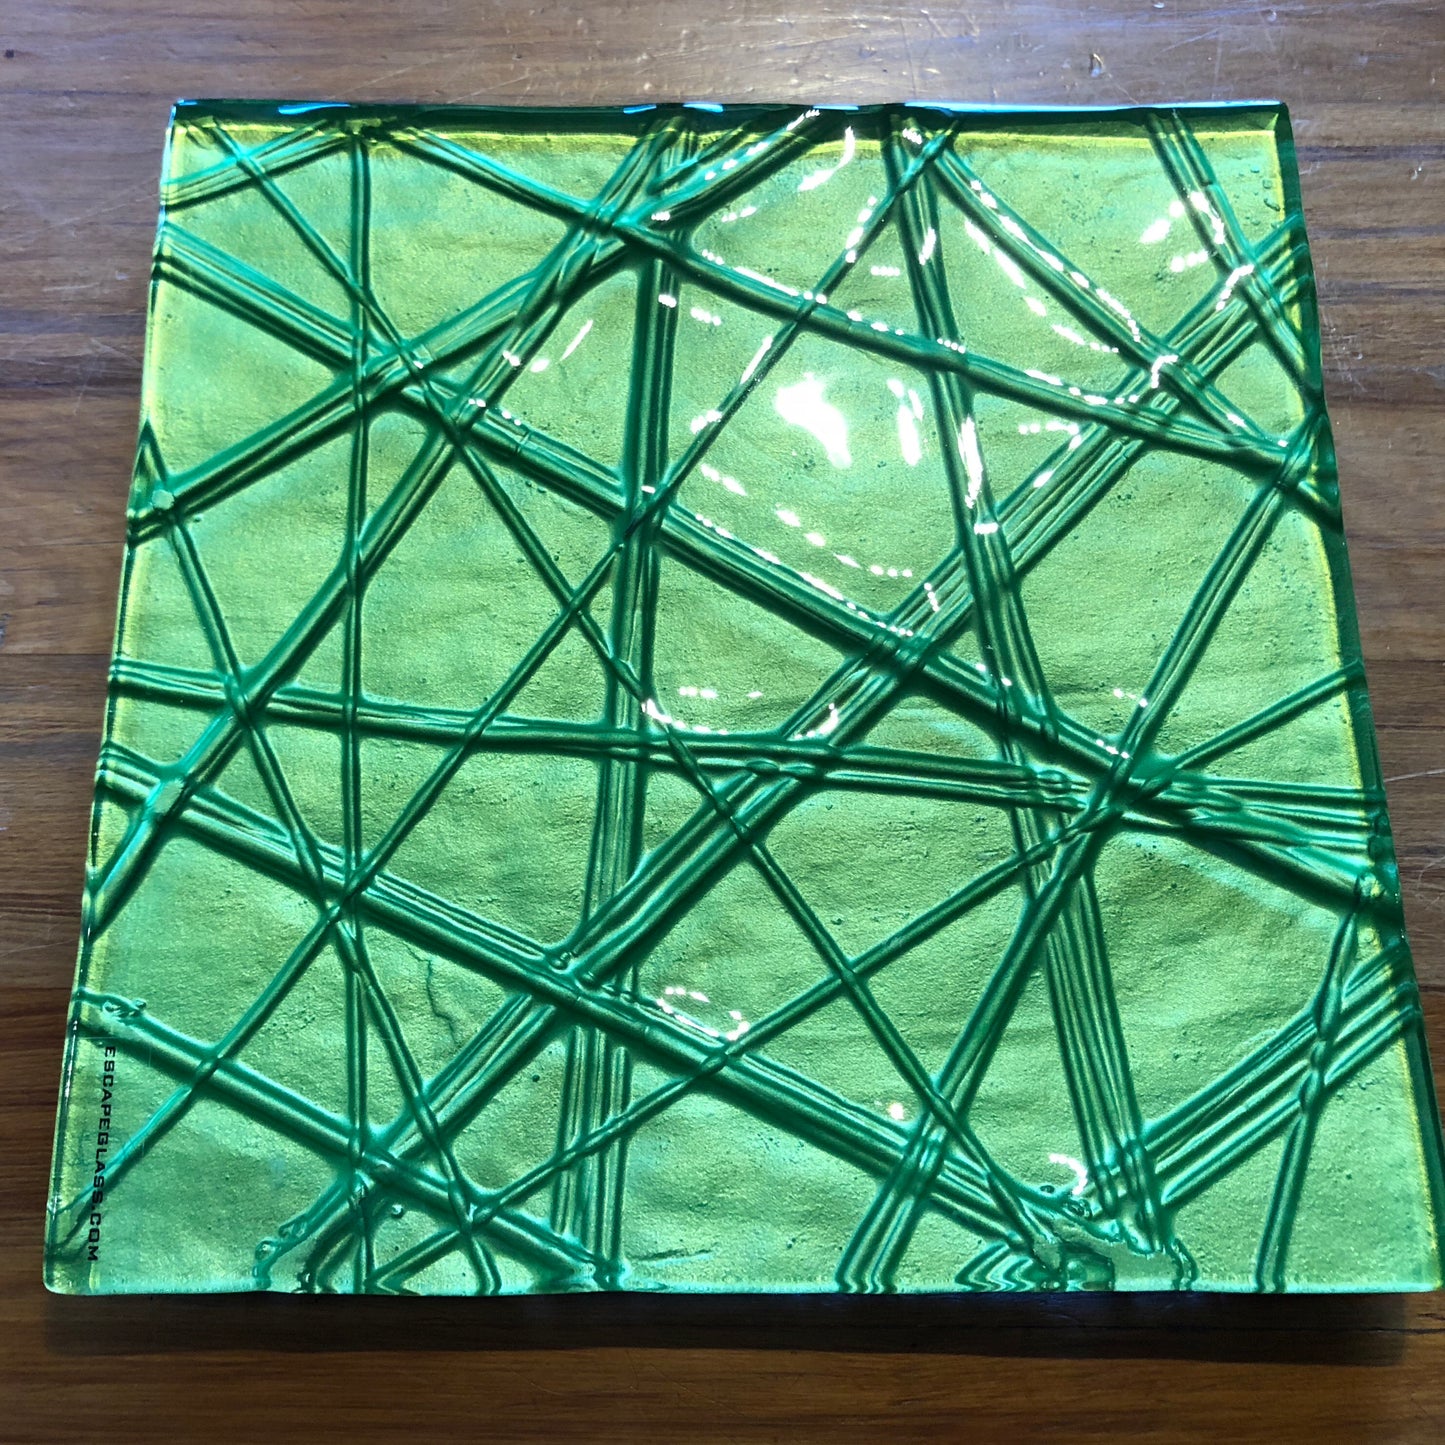 Viper Green Square - 20cm